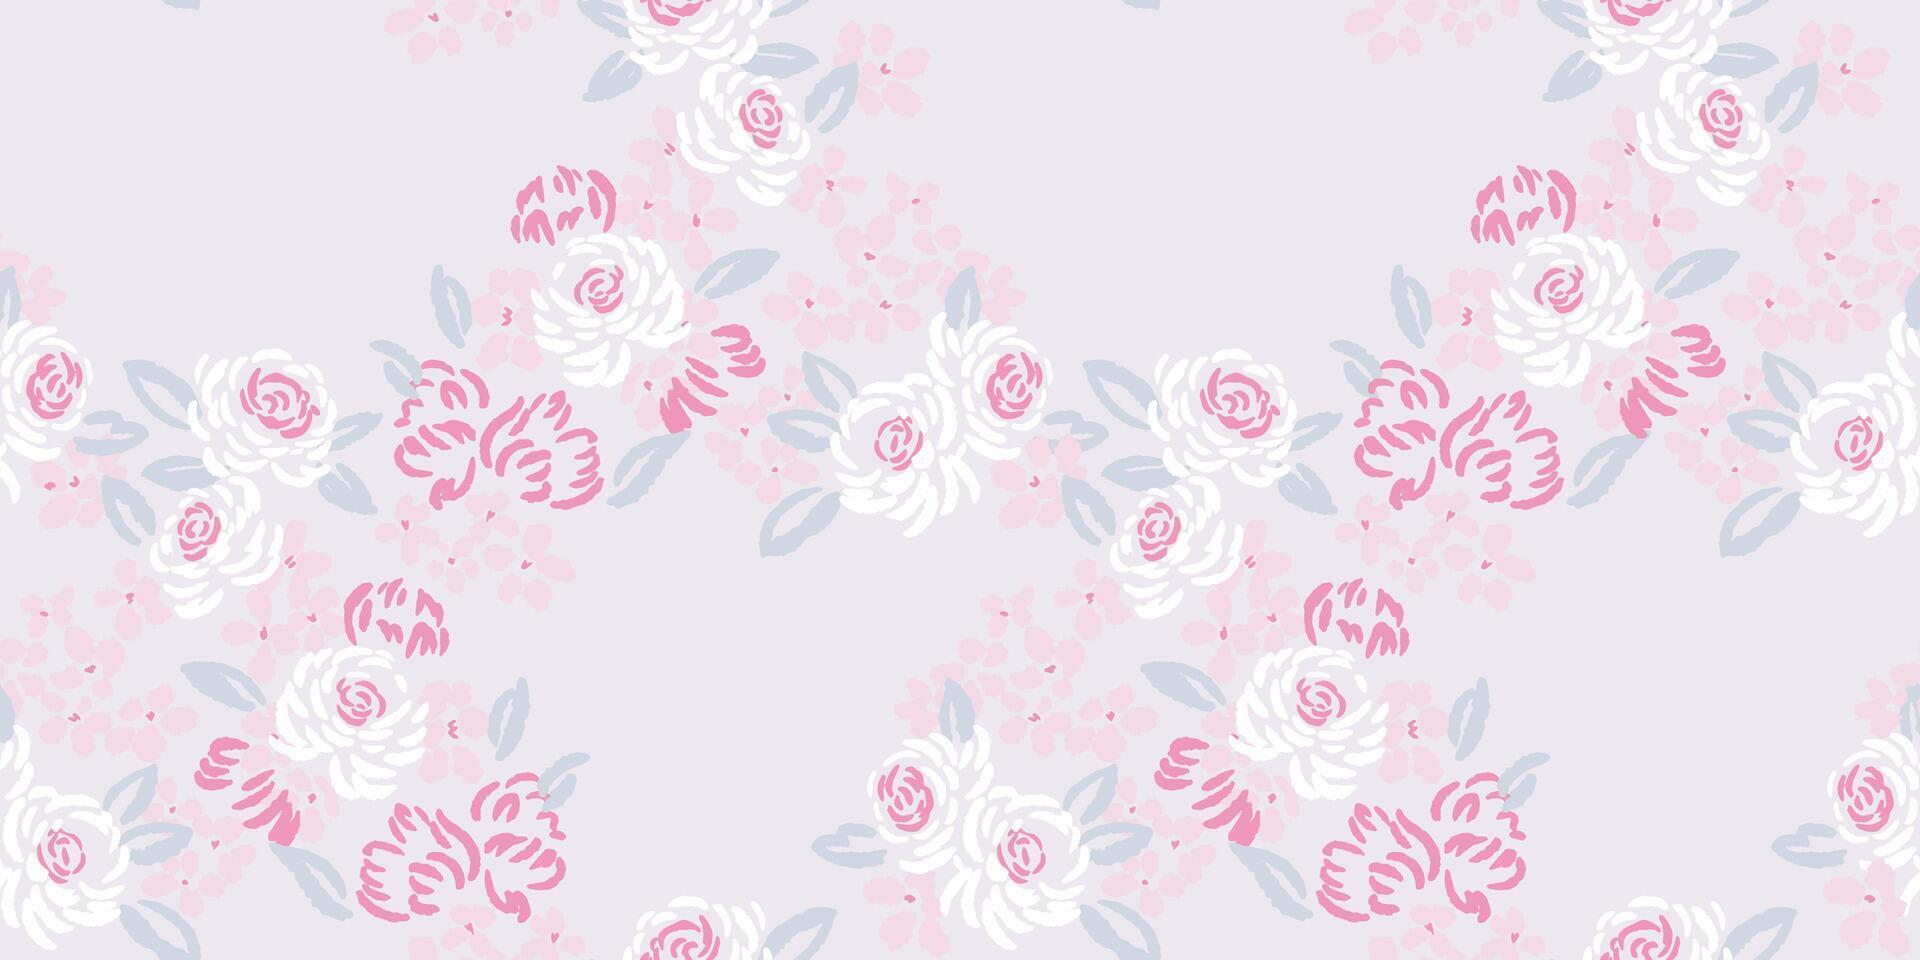 ligero pastel creativo suavemente floral estampado. sin costura abstracto, artístico sencillo Rosa flores, minúsculo hojas, brotes, modelo. vector mano dibujado bosquejo. modelo para diseño, impresión, collage, tela